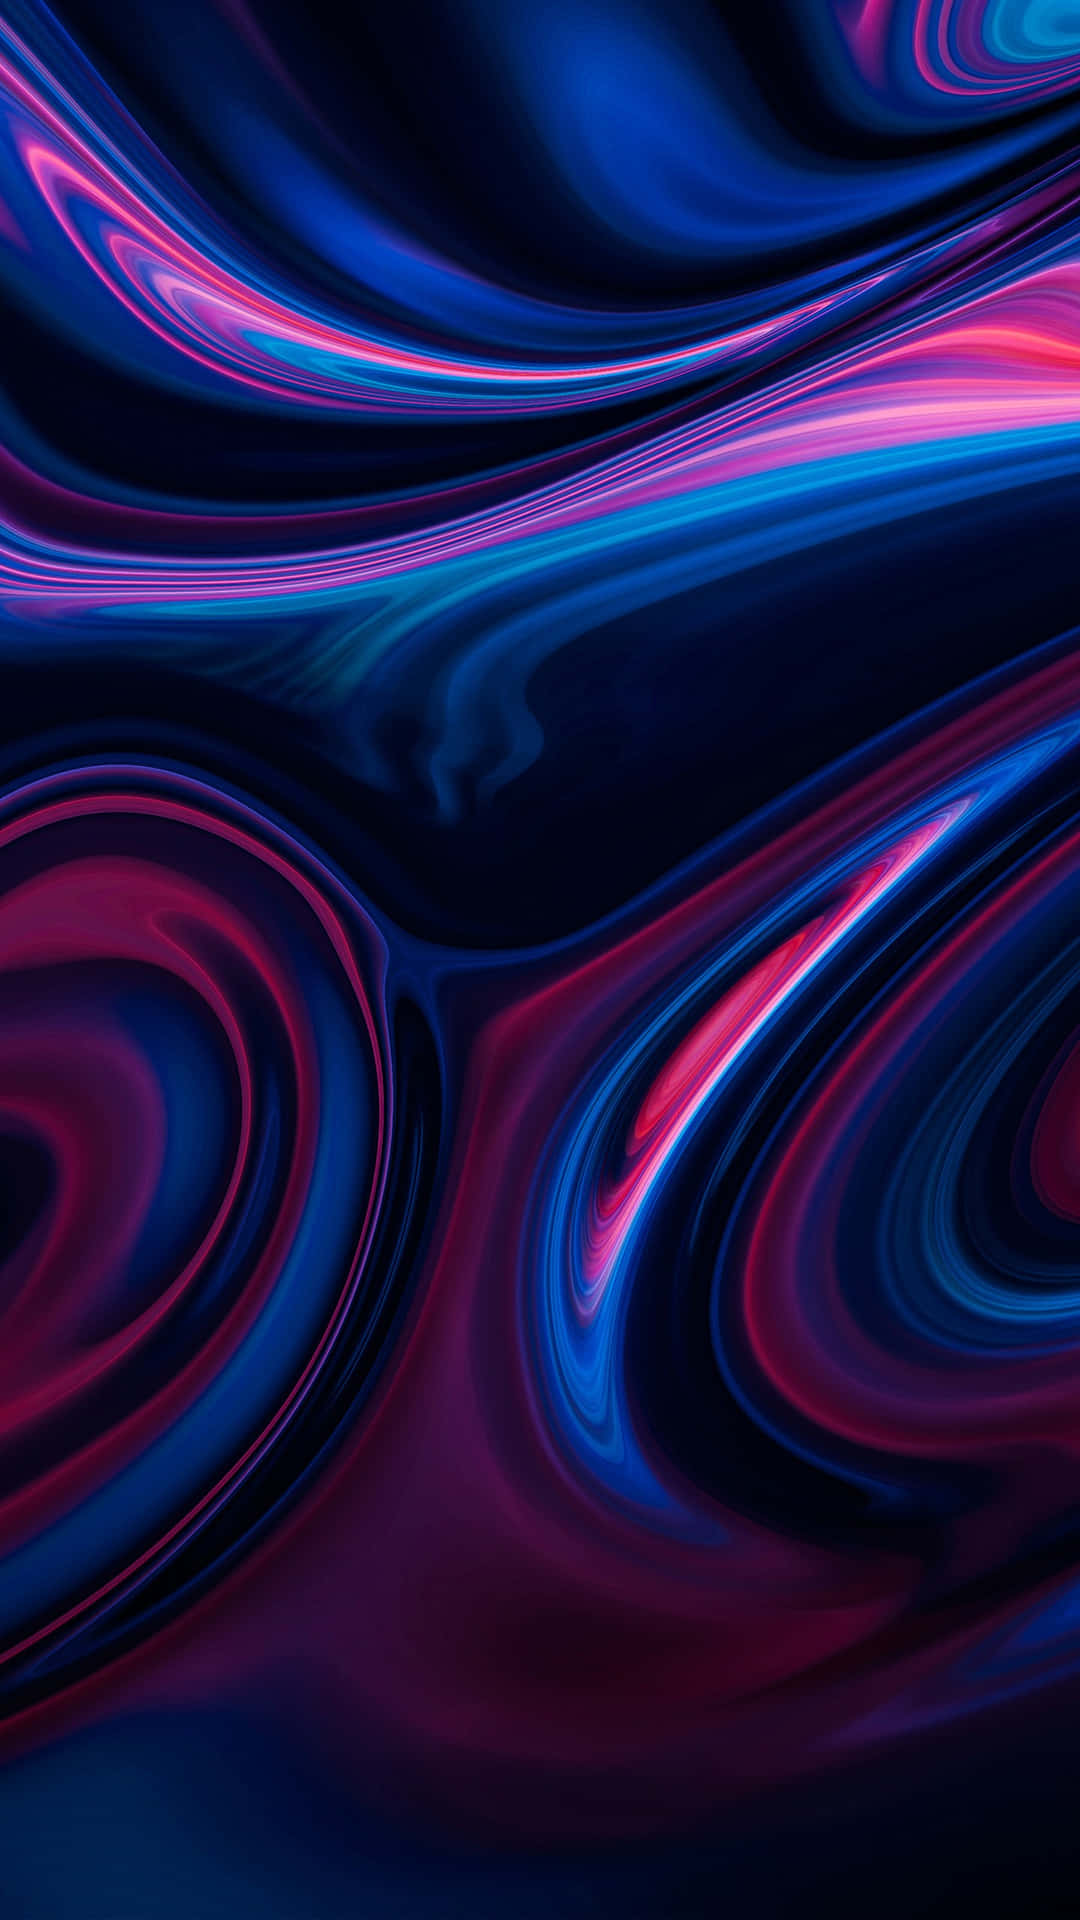 Hintergrundmit Blauen Und Pinken Neonfarbenen Wirbelmustern